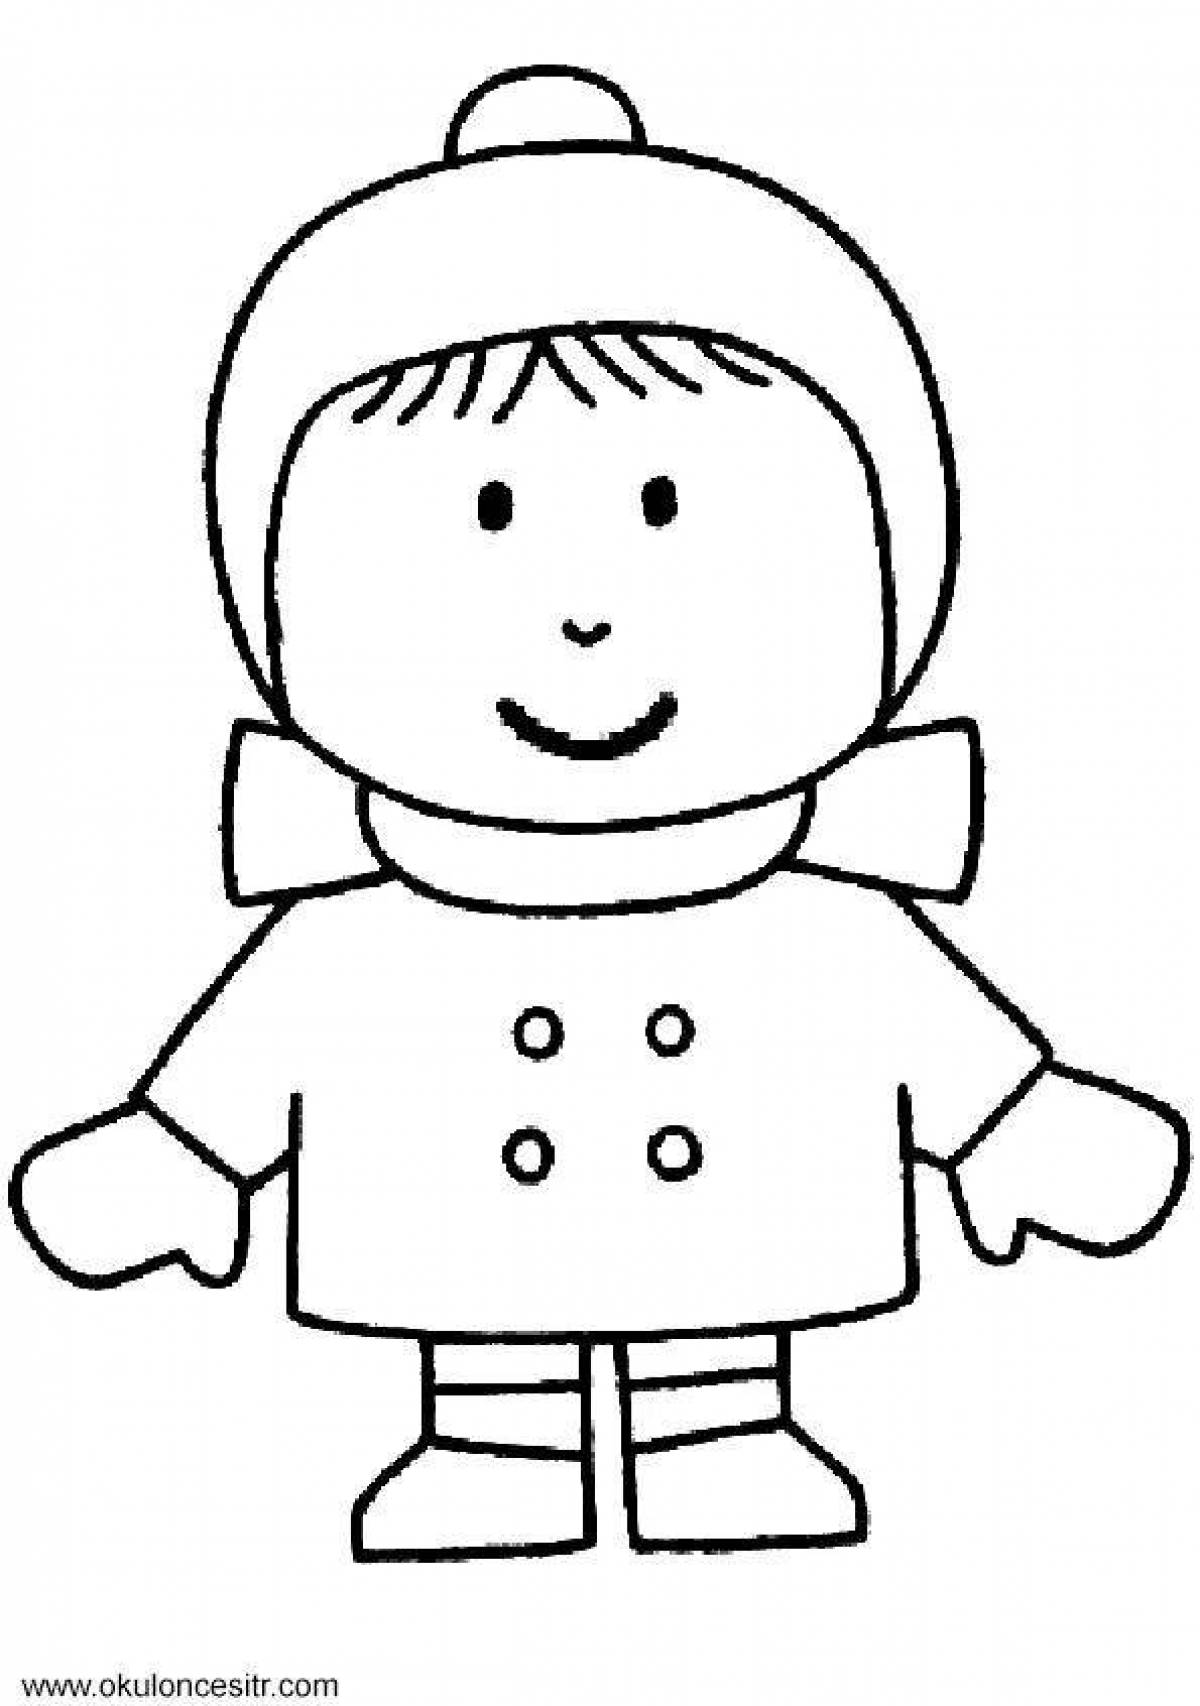 Веселая раскраска для детей мальчик в зимней одежде